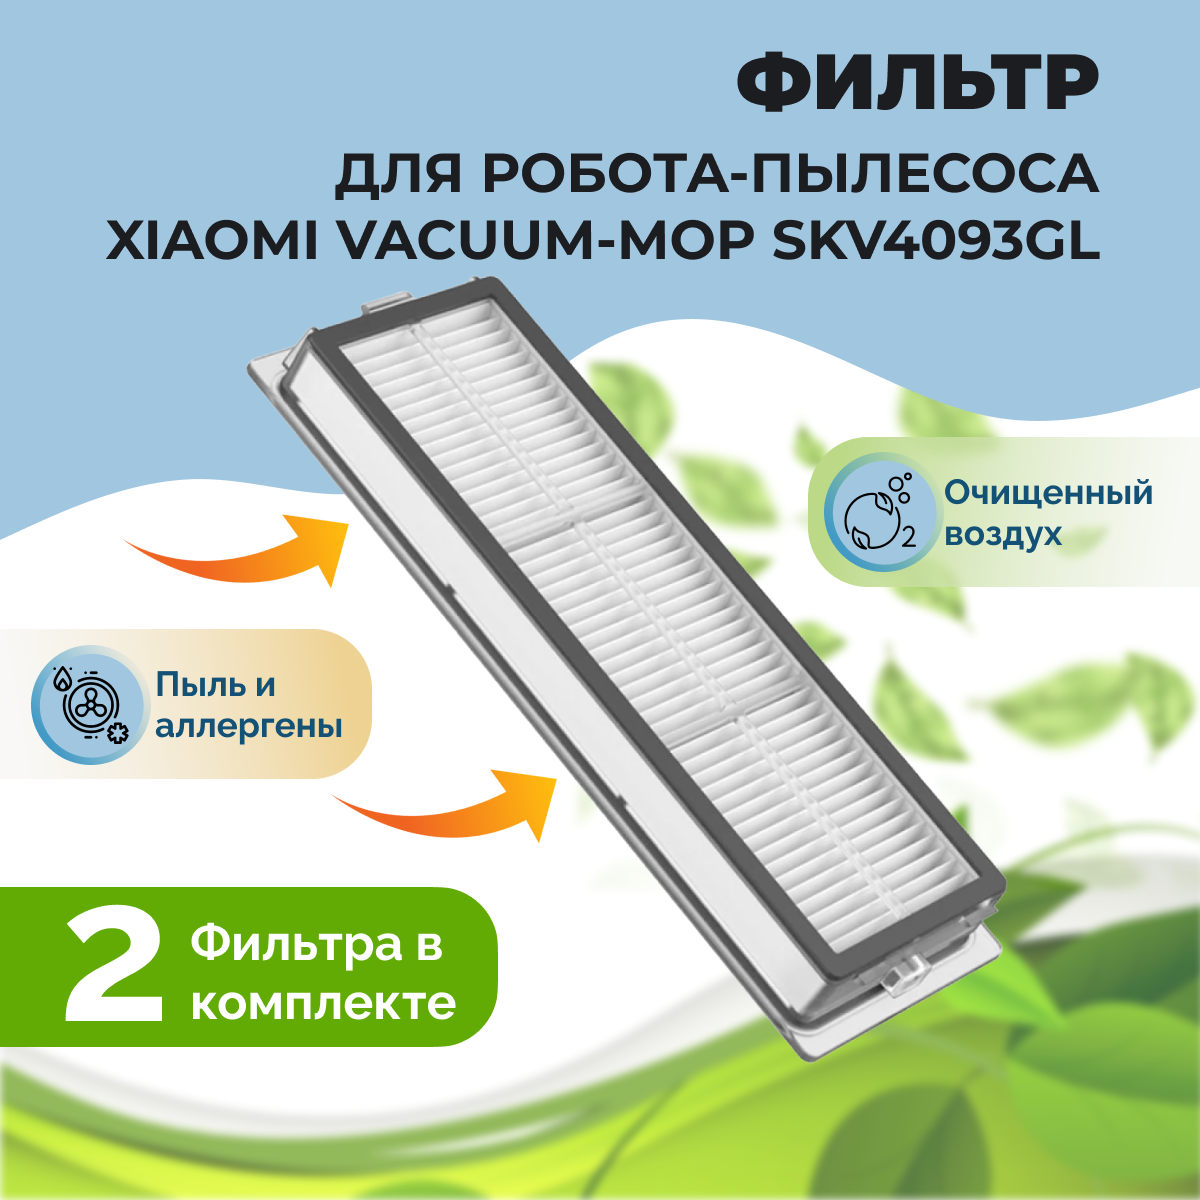 Фильтры для робота-пылесоса Xiaomi Vacuum-Mop (SKV4093GL), 2 штуки 558492